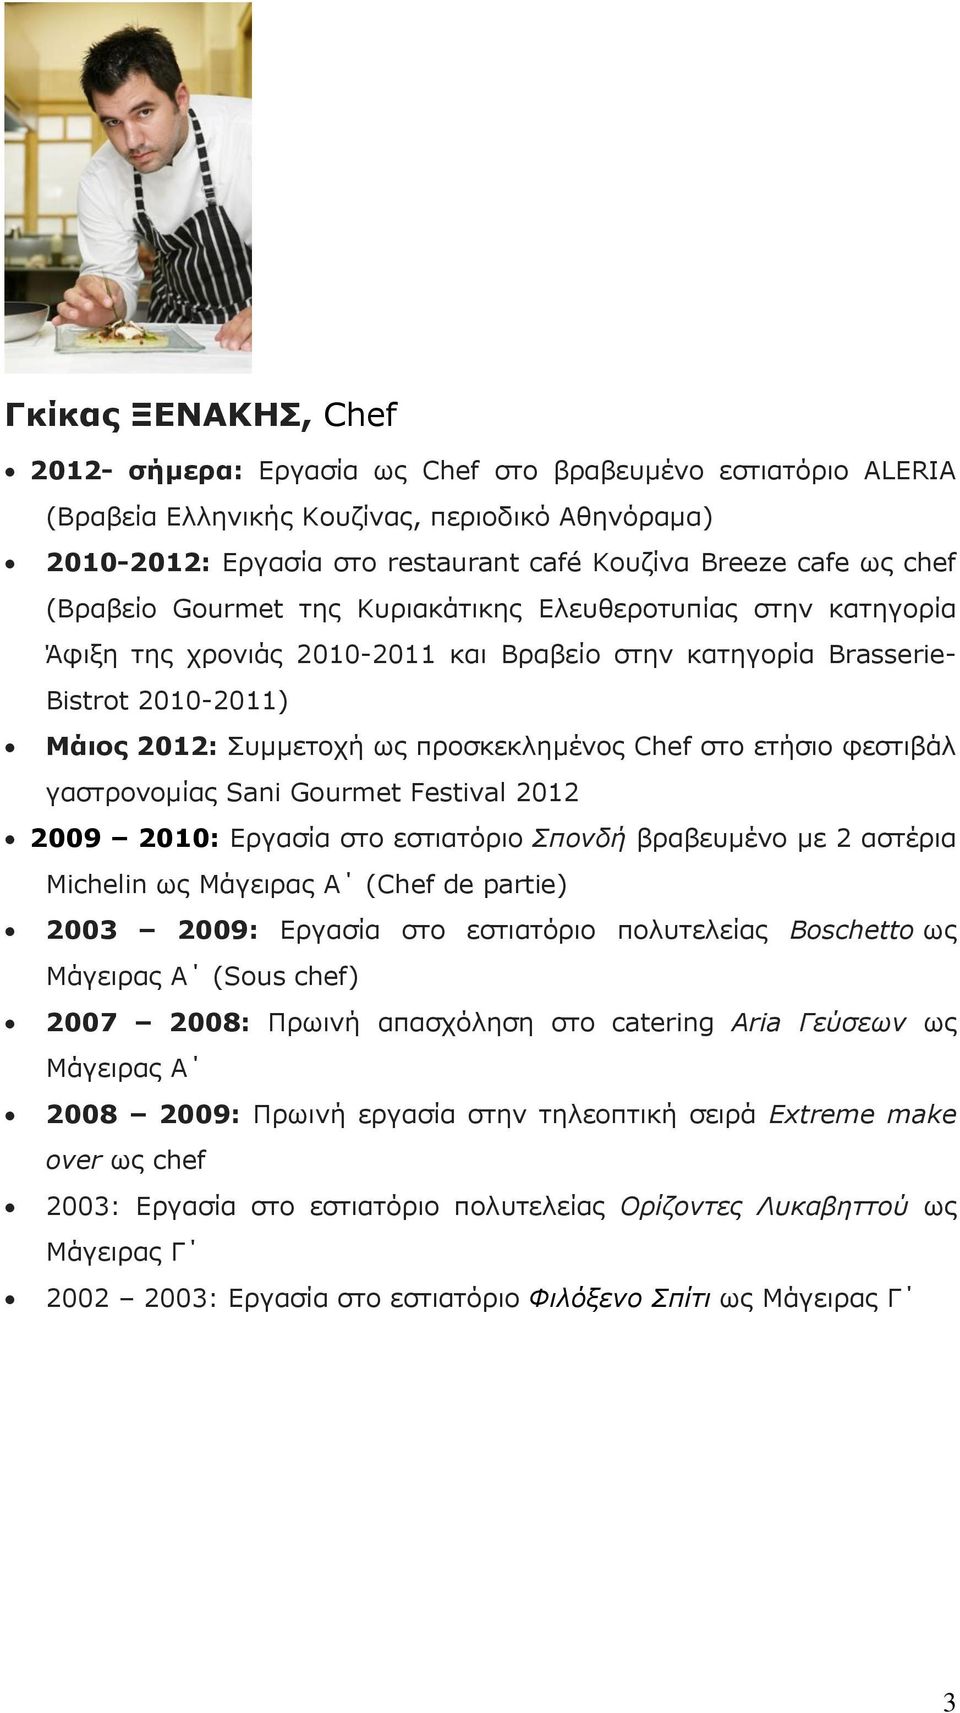 ζην εηήζην θεζηηβάι γαζηξνλνκίαο Sani Gourmet Festival 2012 2009 2010: Δξγαζία ζην εζηηαηφξην Σπονδή βξαβεπκέλν κε 2 αζηέξηα Michelin σο Κάγεηξαο Α (Chef de partie) 2003 2009: Δξγαζία ζην εζηηαηφξην